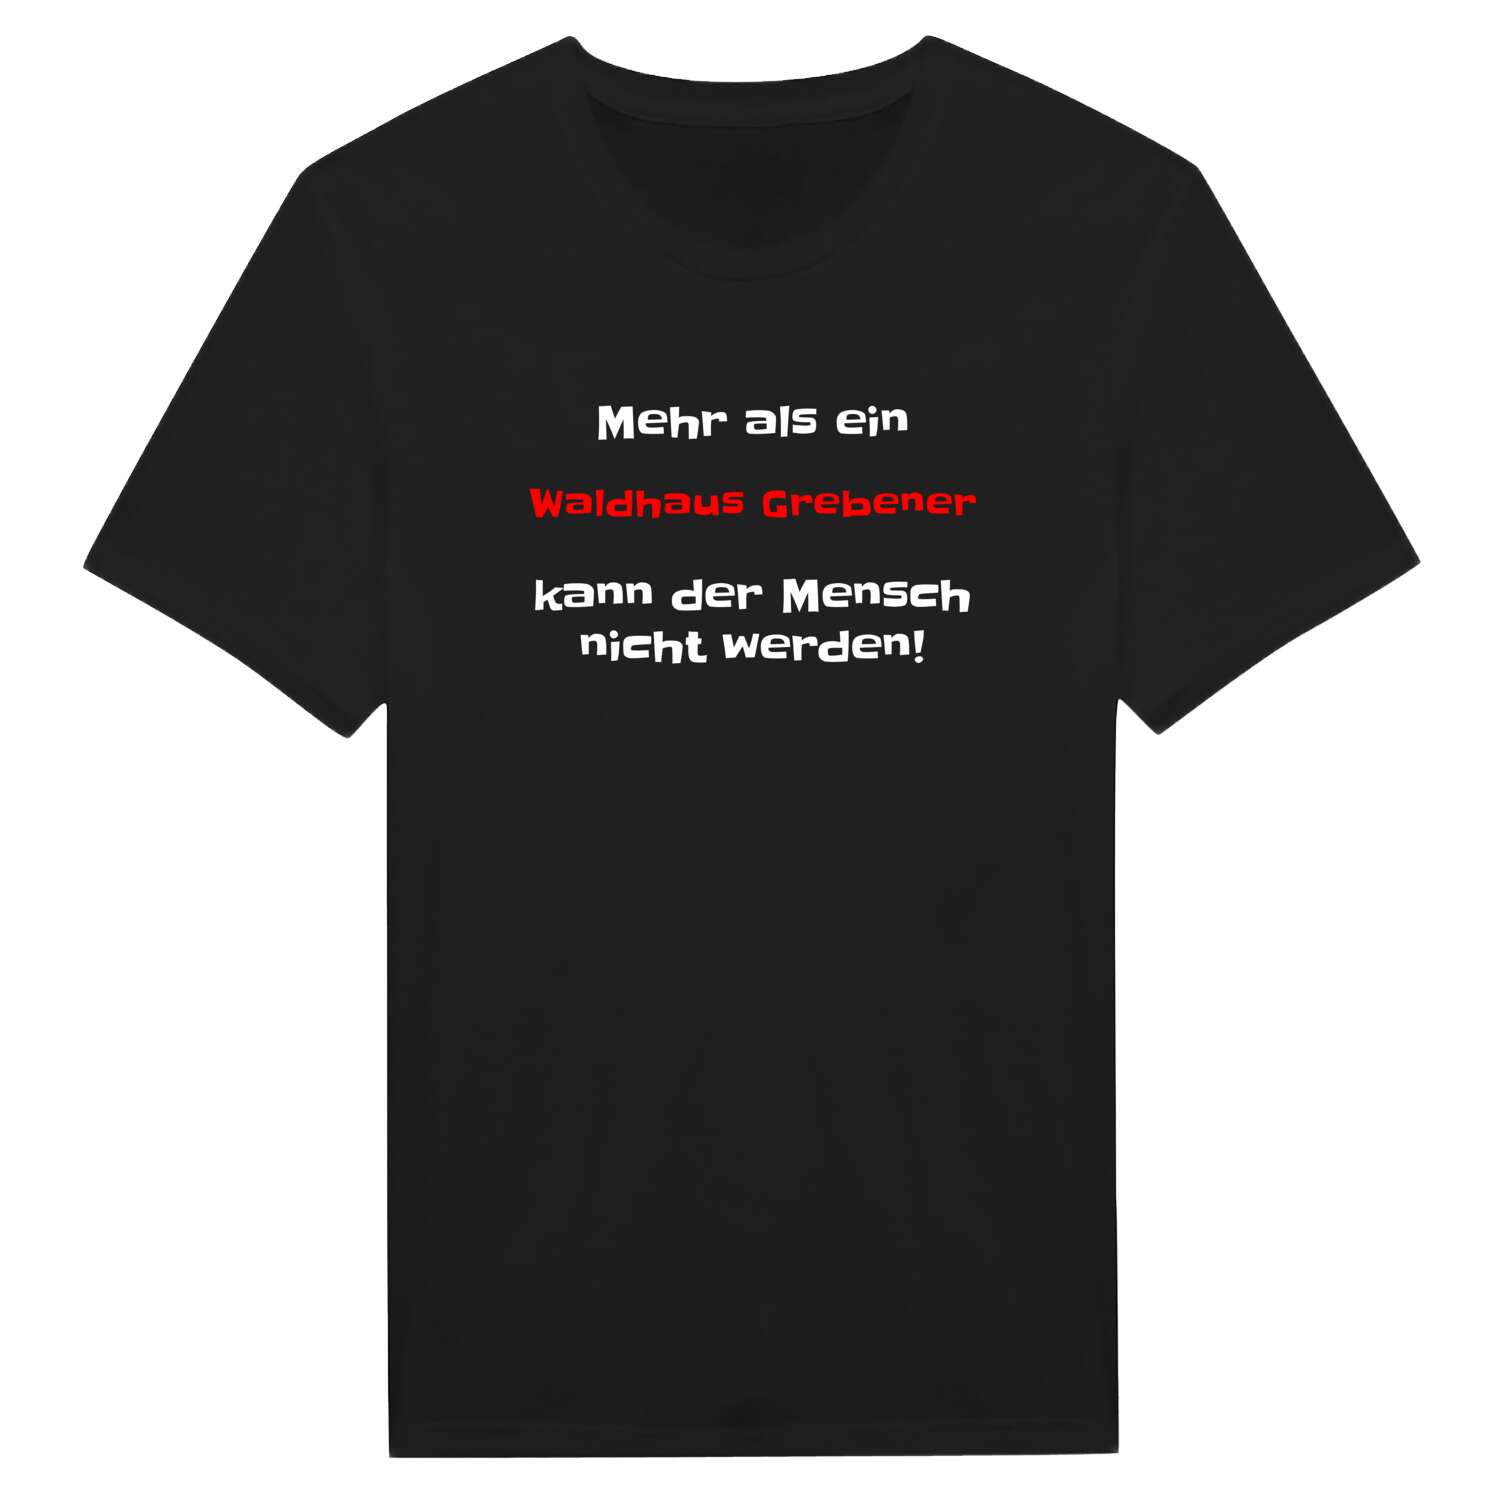 Waldhaus Grebe T-Shirt »Mehr als ein«